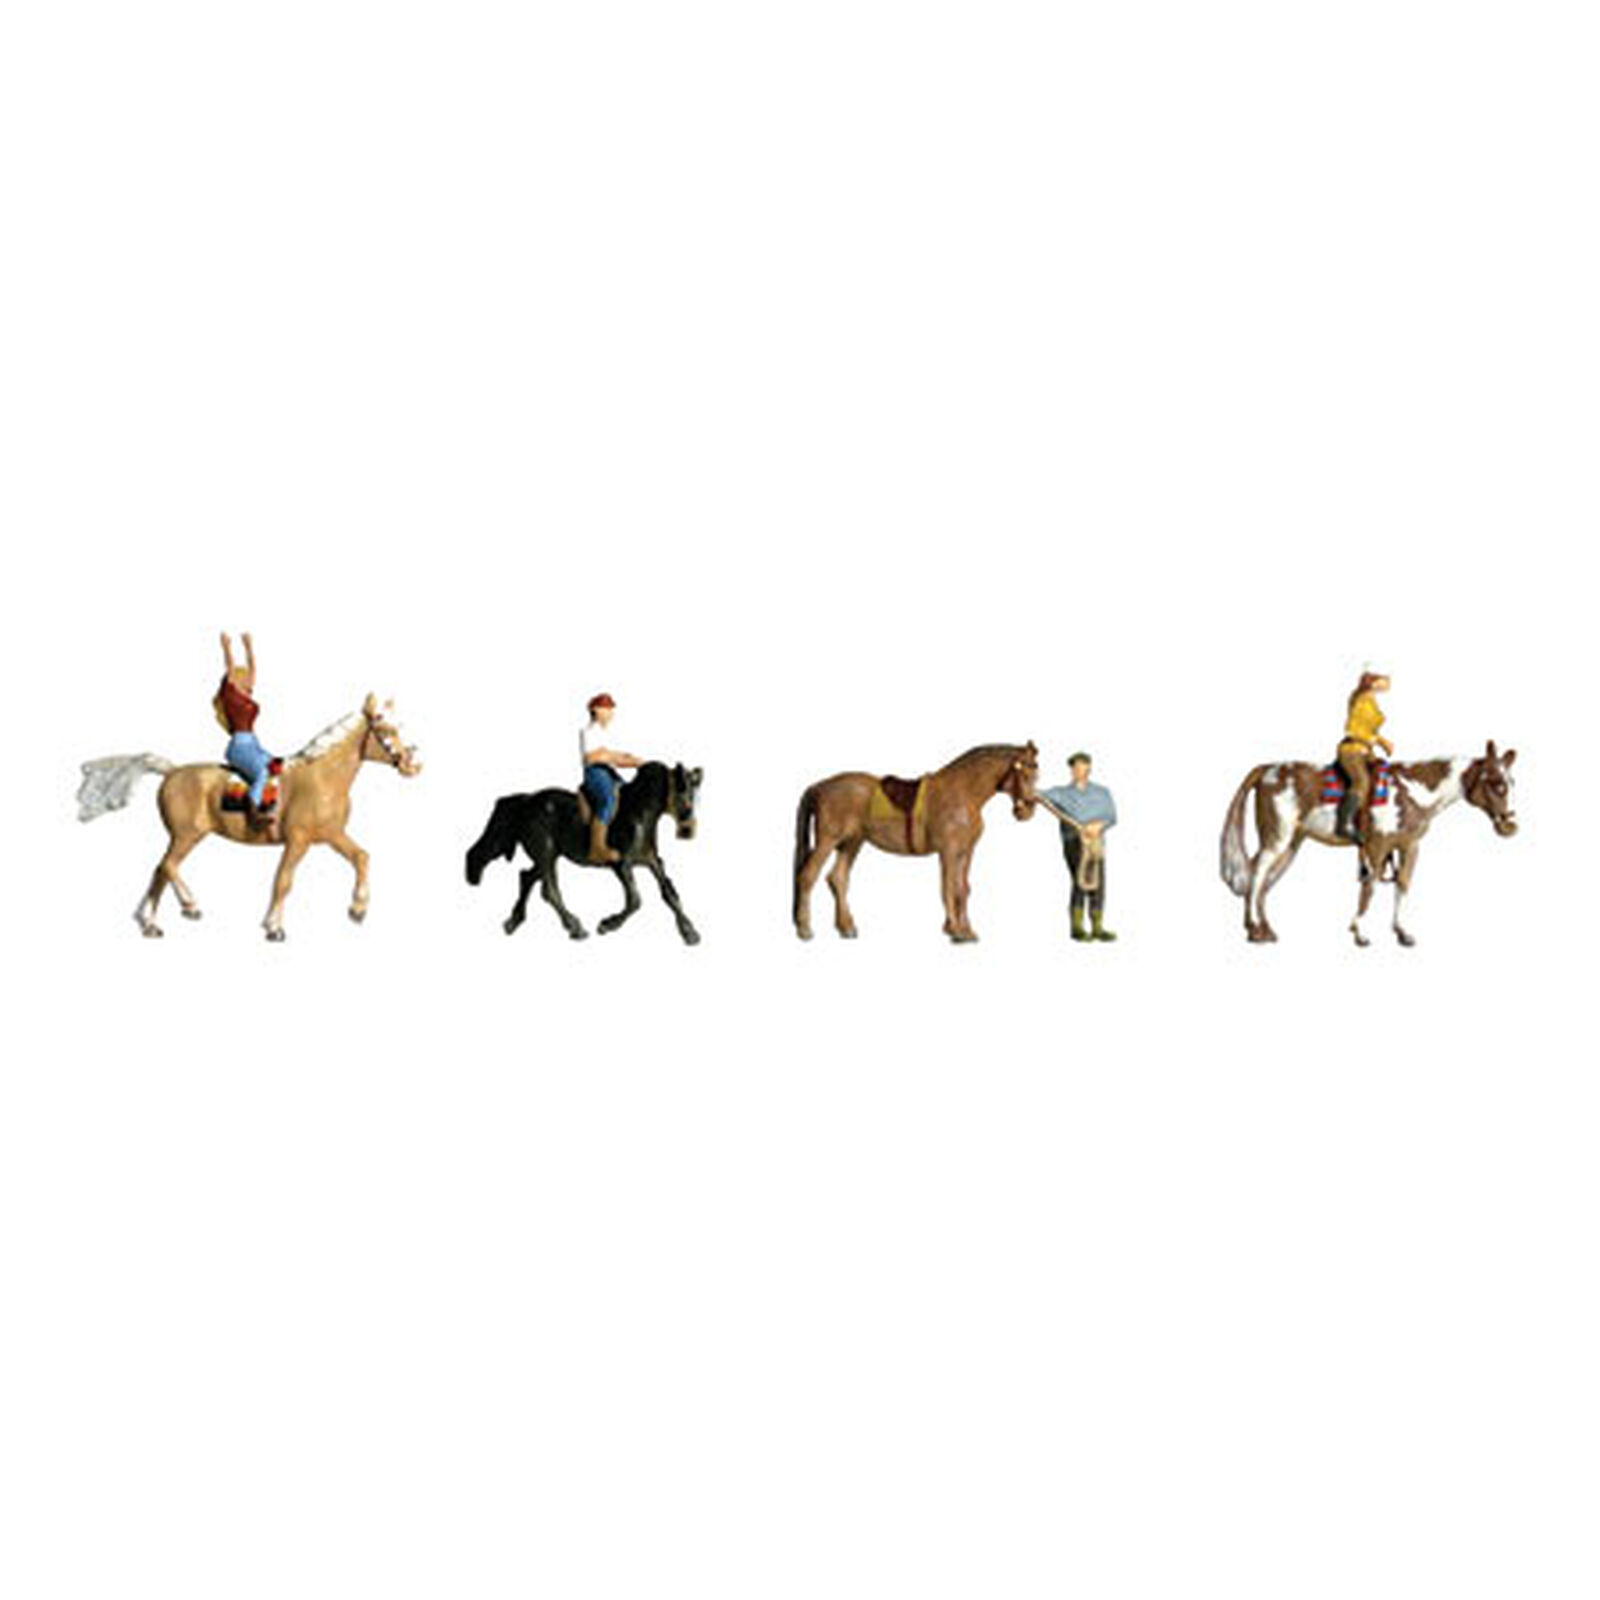 N Horseback Riders